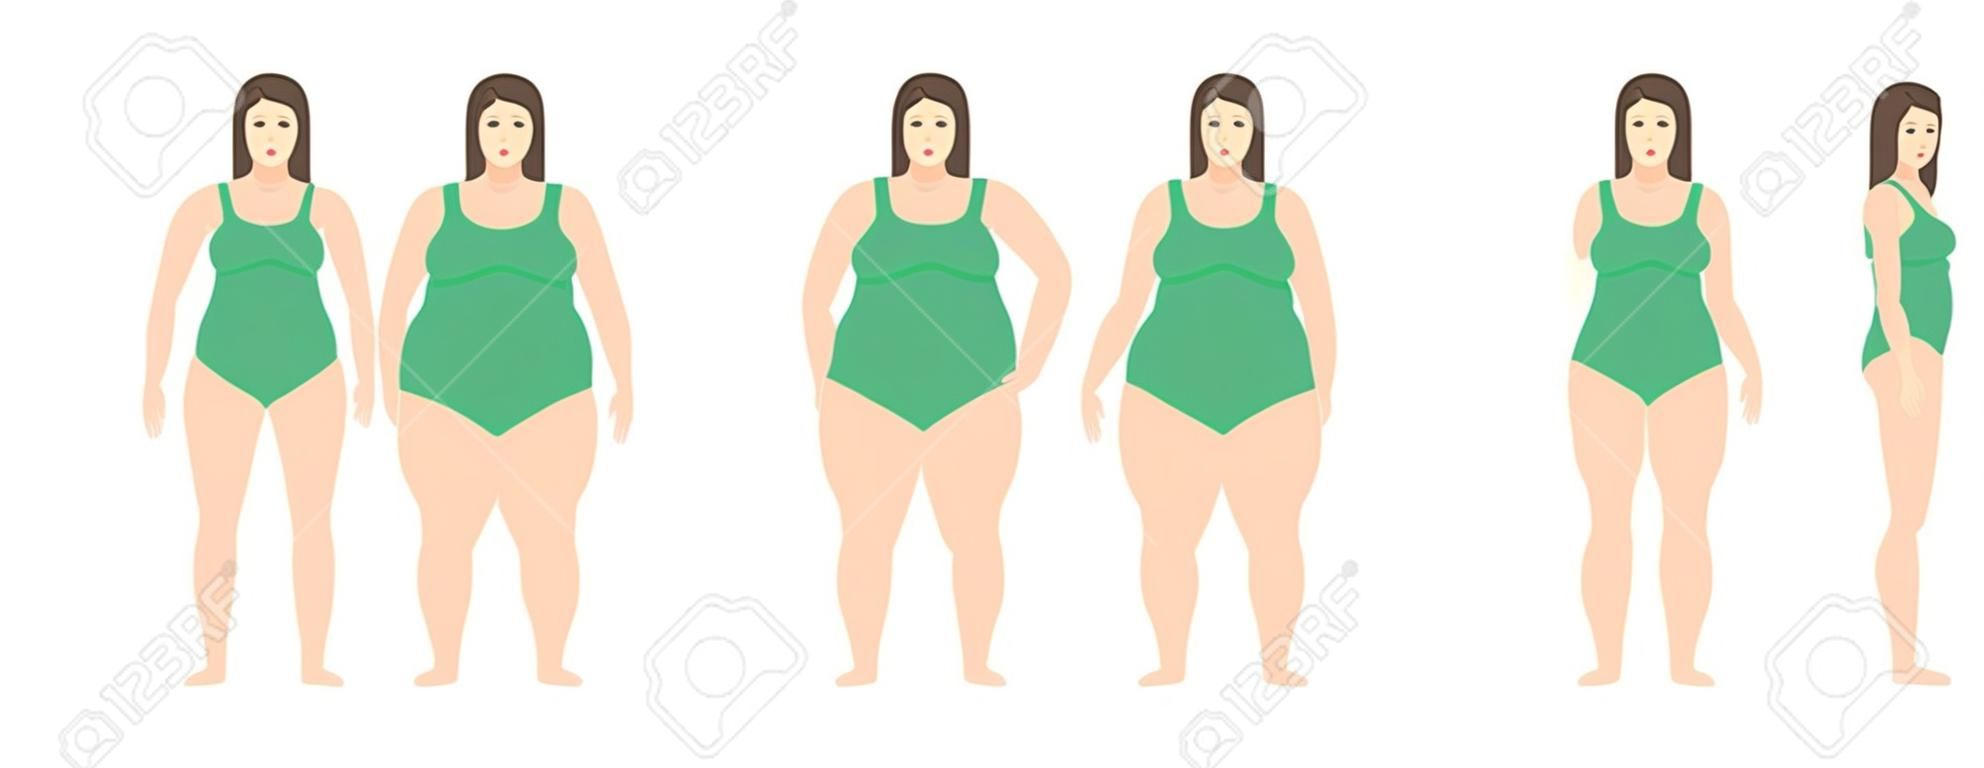 거식 증에서 매우 비만에 다른 무게를 가진 여자의 벡터 일러스트 레이 션. 체질량 지수, 체중 감량 개념.